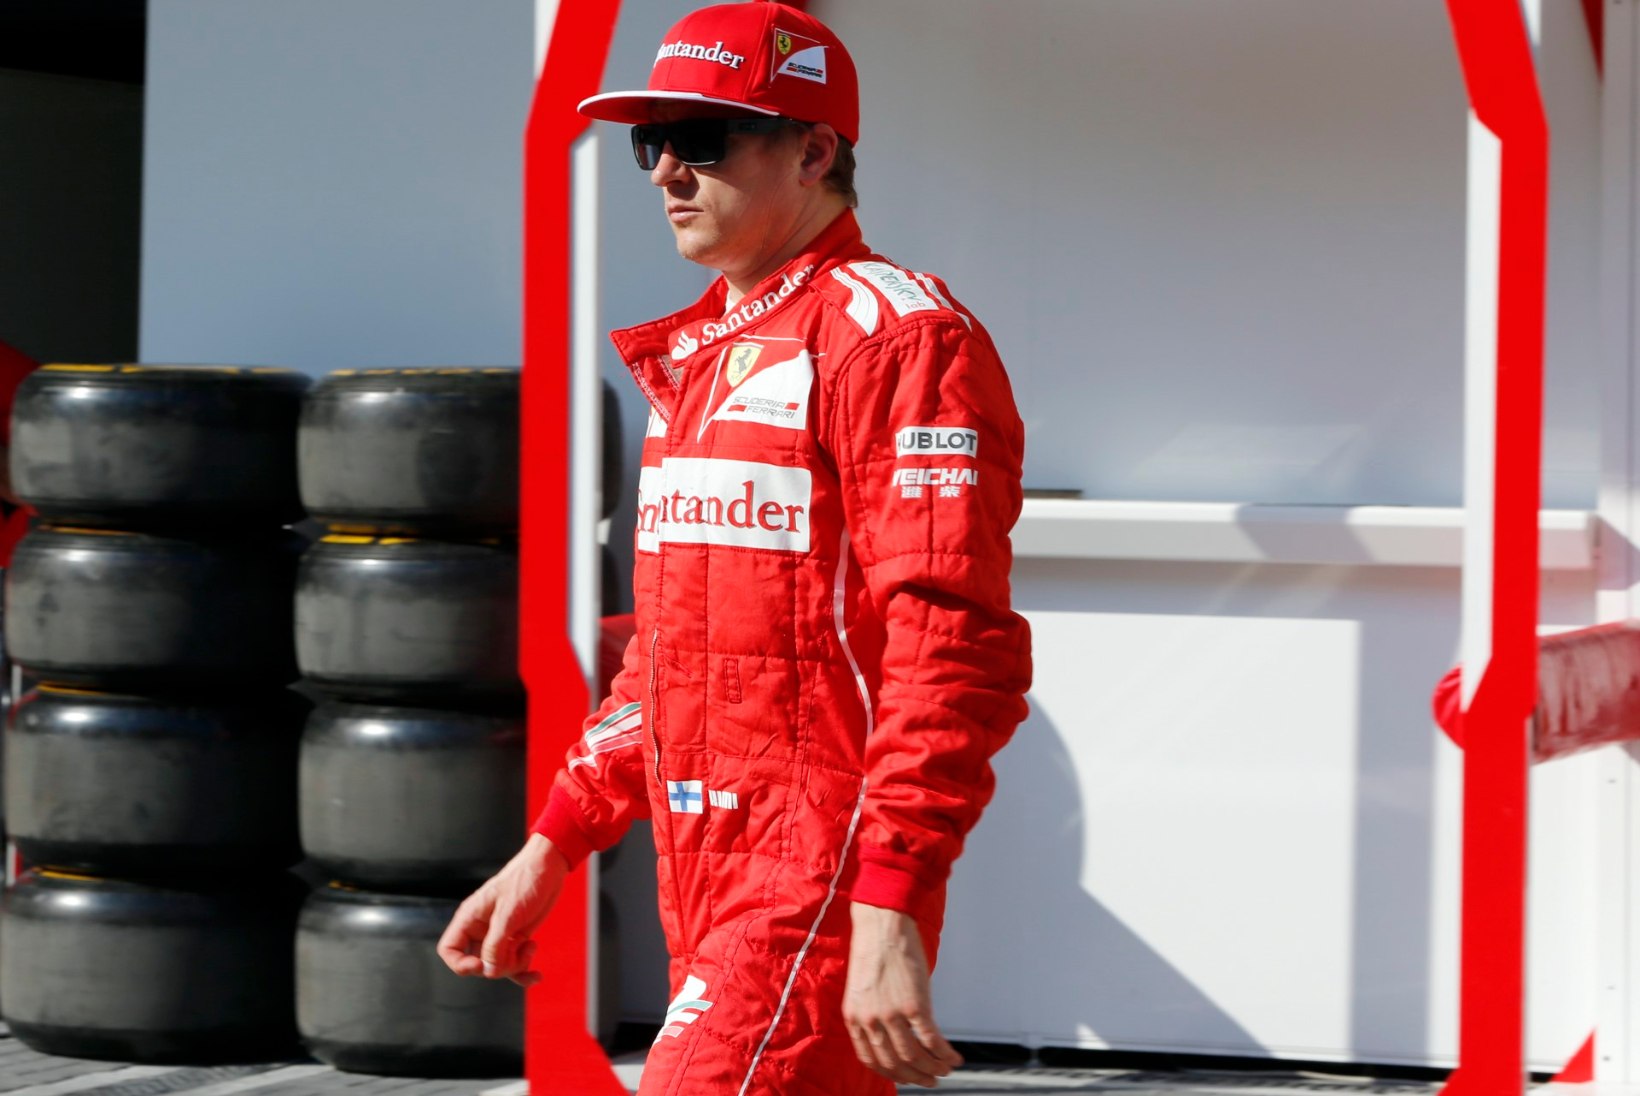 PÕNEV-PÕNEV! Schumacher, Hamilton ja Vettel jäänuks MM-tiitlist ilma, kui minevikuski viimase GP eest topeltpunkte jagatuks